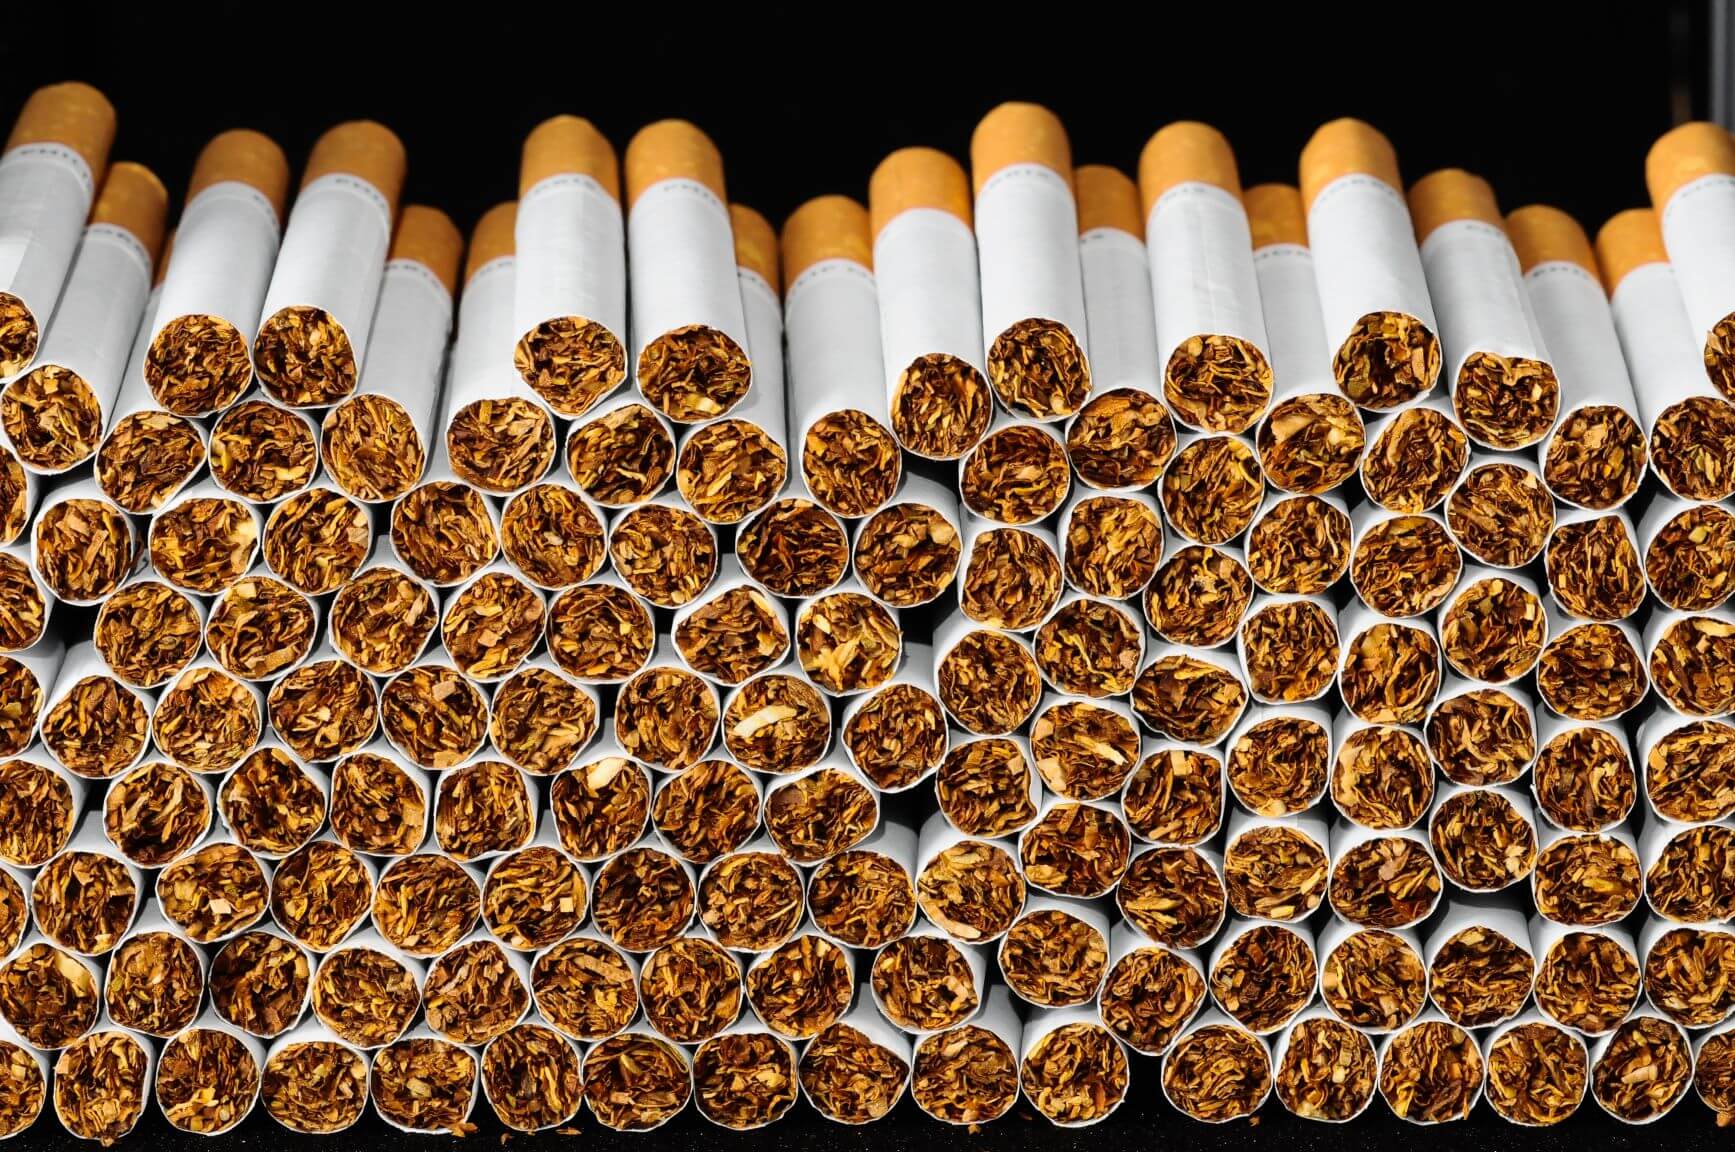 Szkodliwość palenia papierosów|Siewcy wątpliwości|Papierosy płuca|Płuca prześwietlenie|Papieros zapalniczka